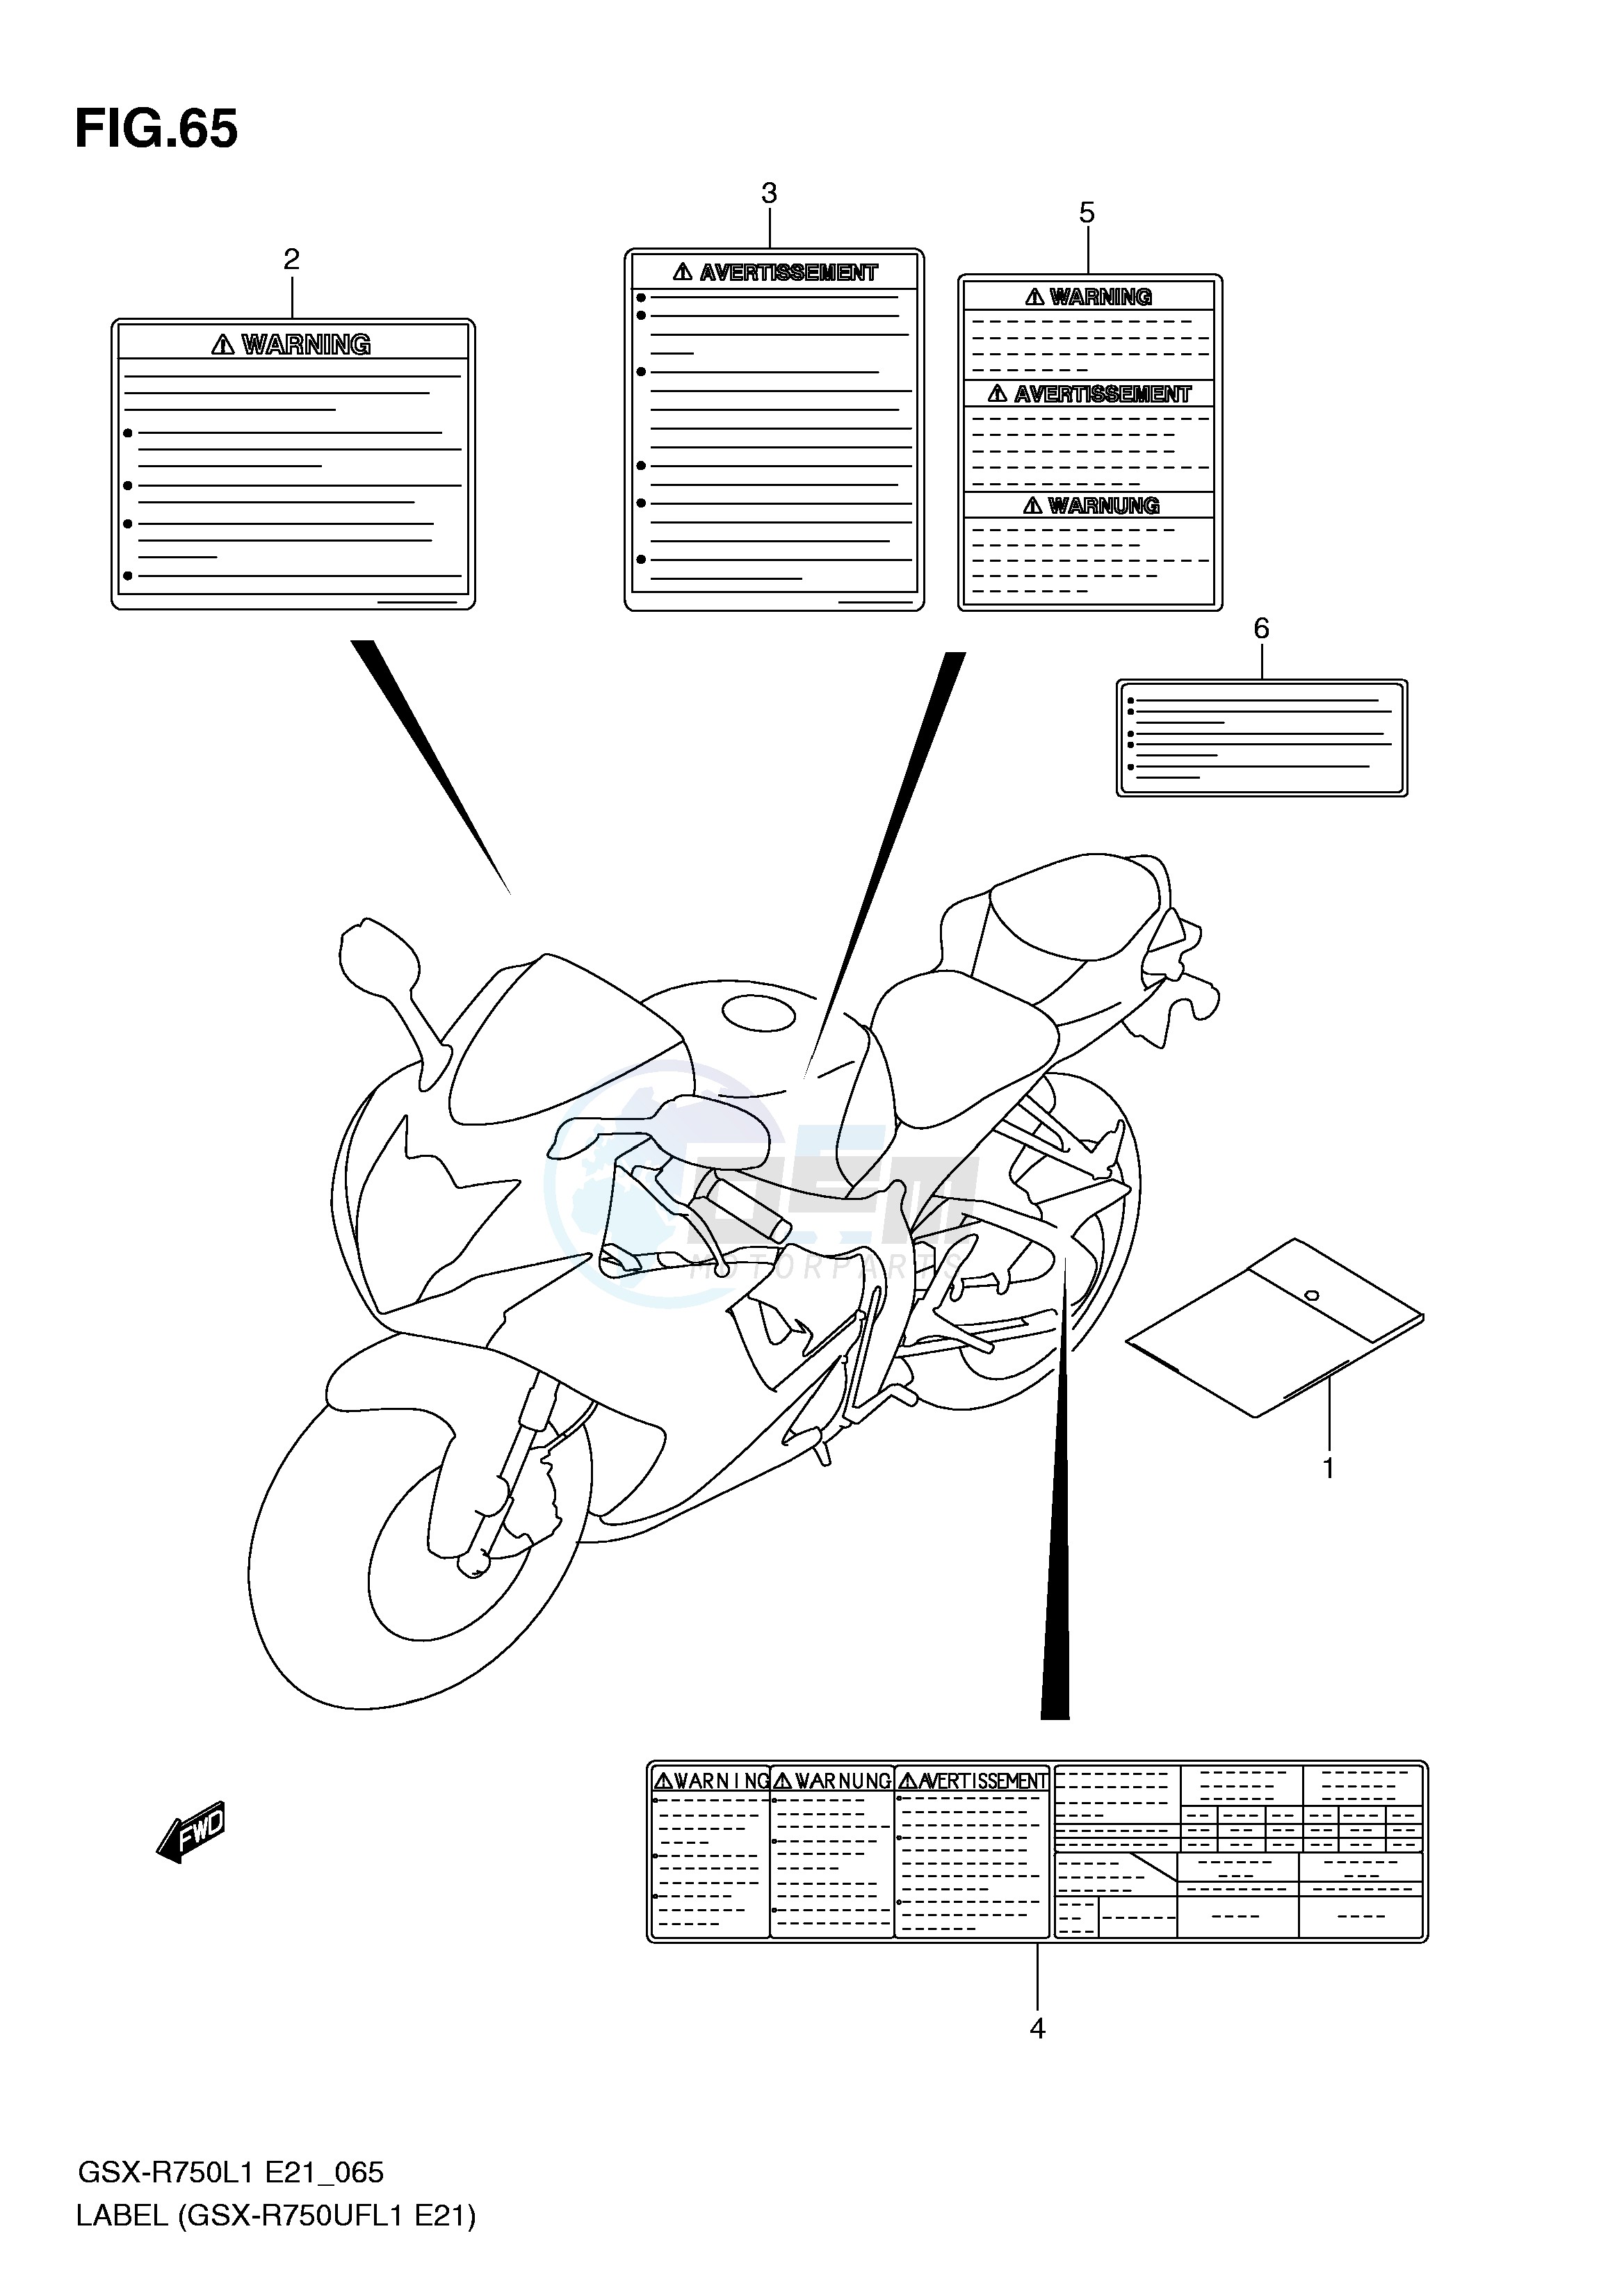 LABEL (GSX-R750UFL1 E21) blueprint